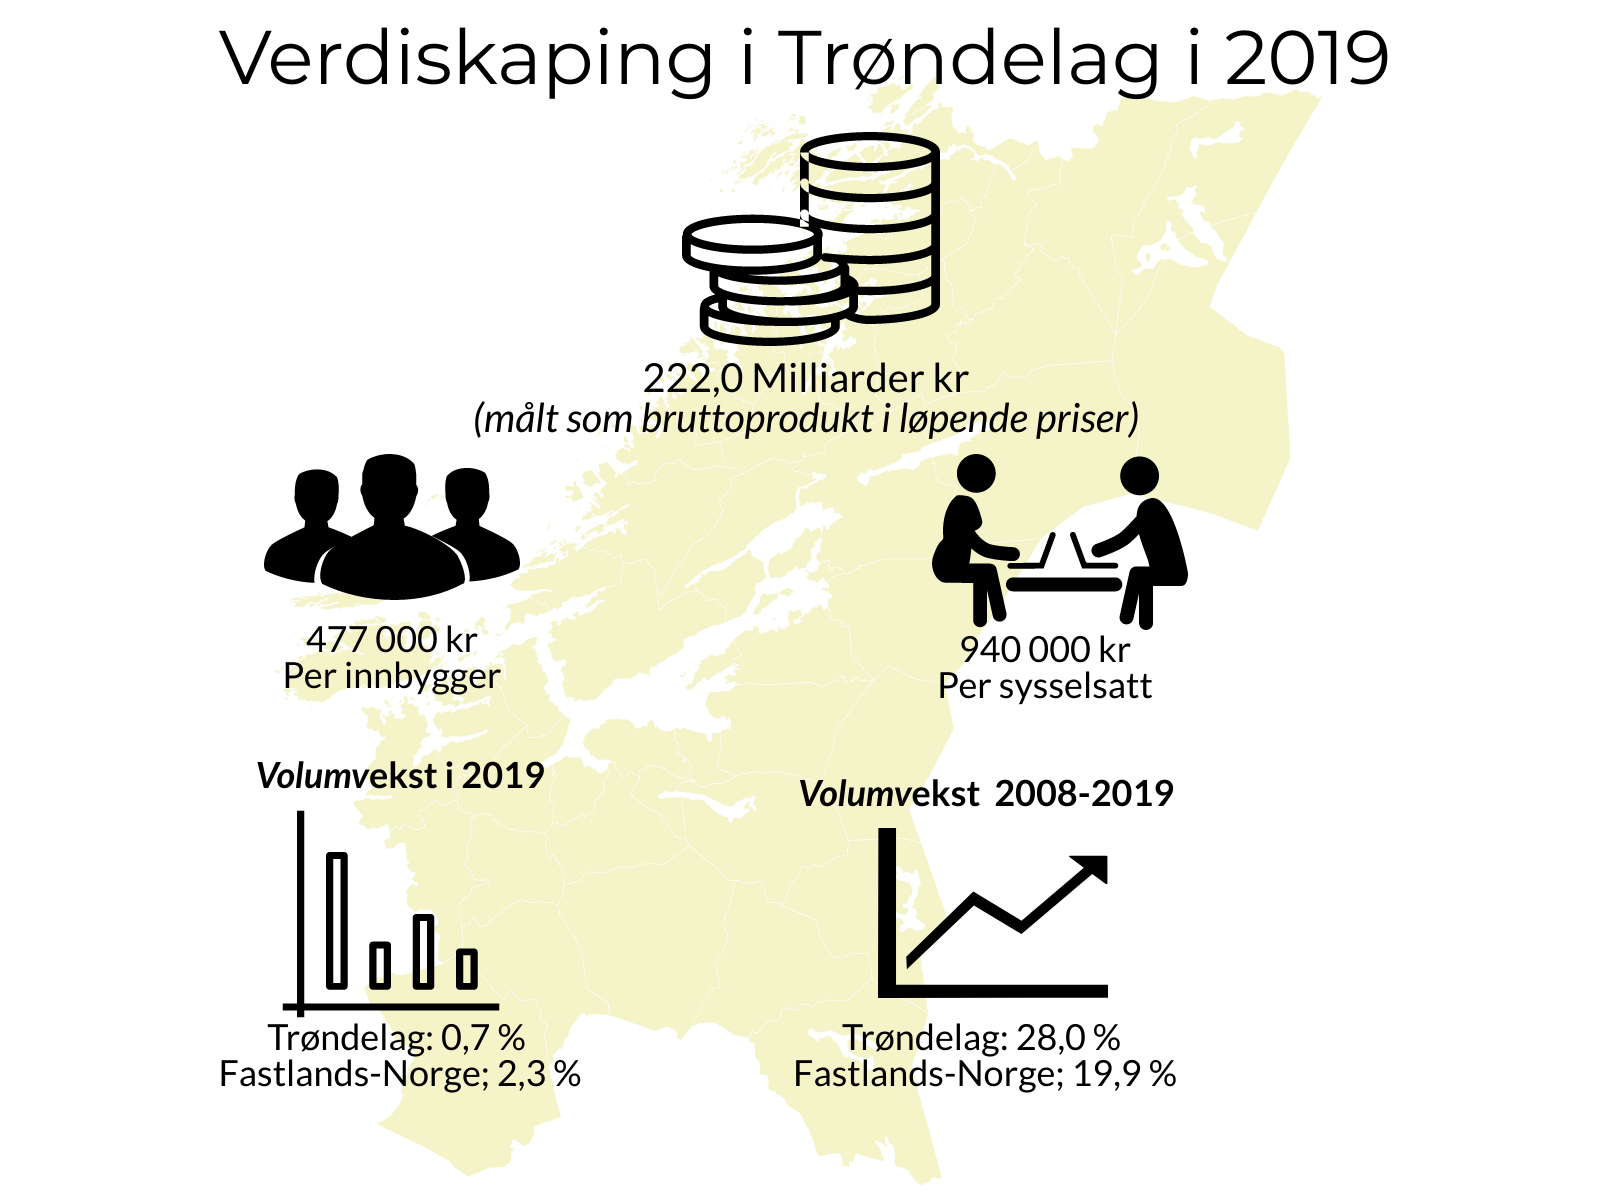 Verdiskaping i Trøndelag i 2019